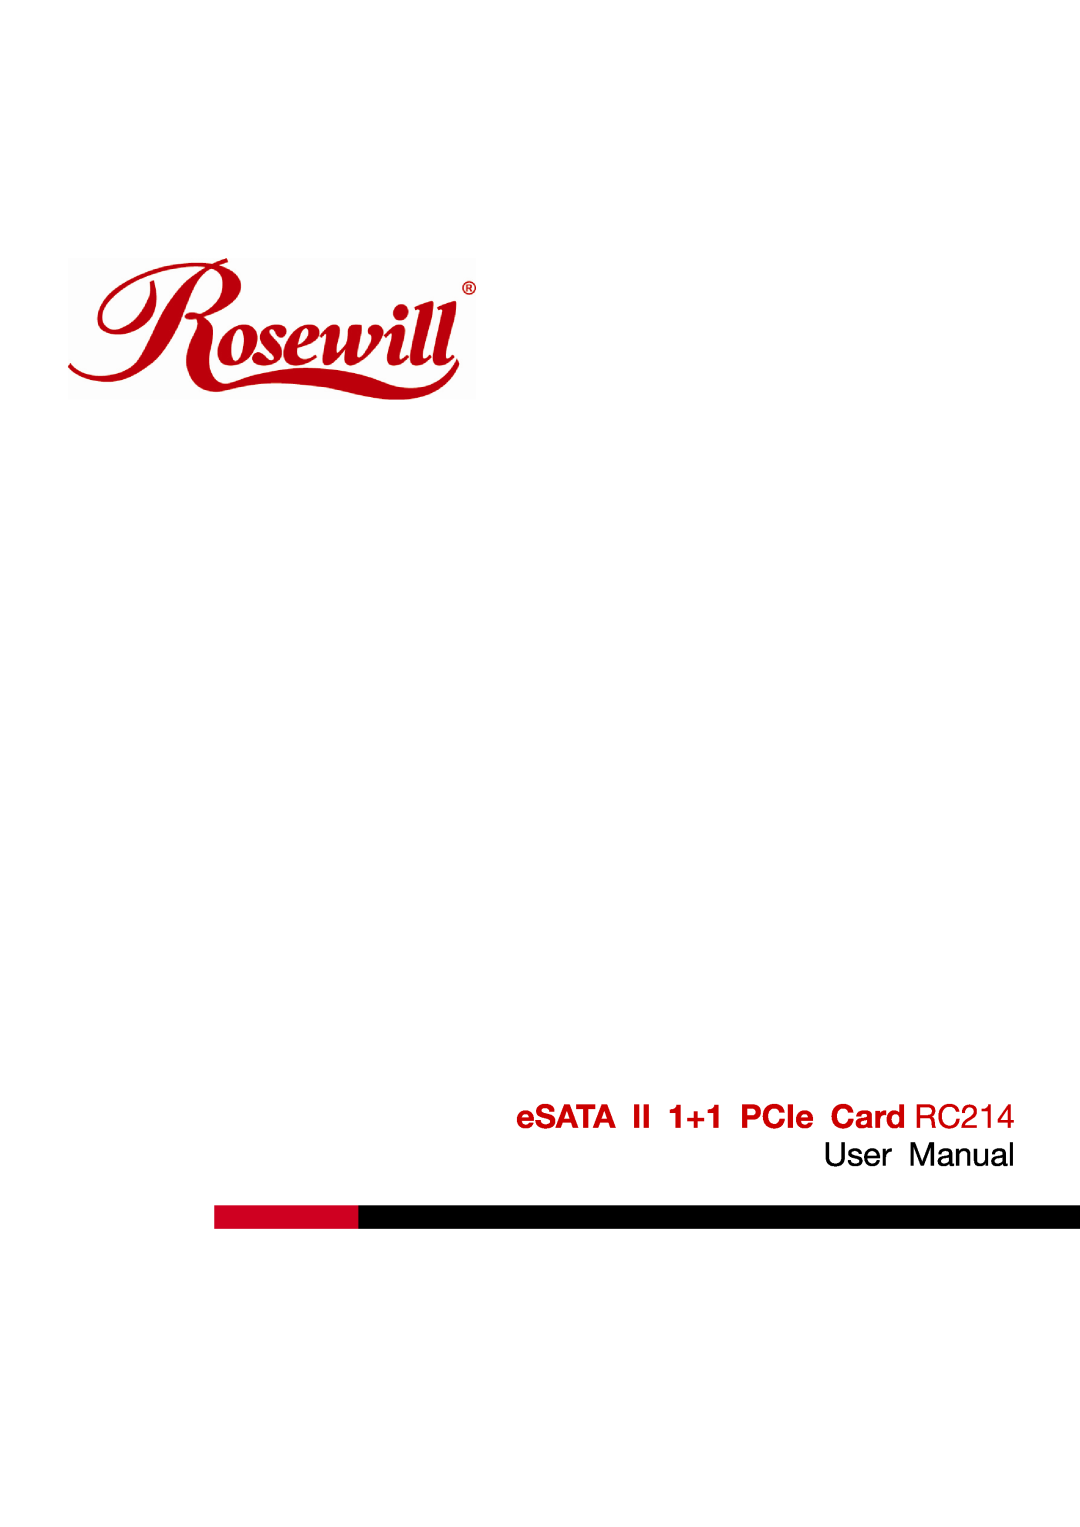 Rosewill user manual eSATA II 1+1 PCIe Card RC214, User Manual 